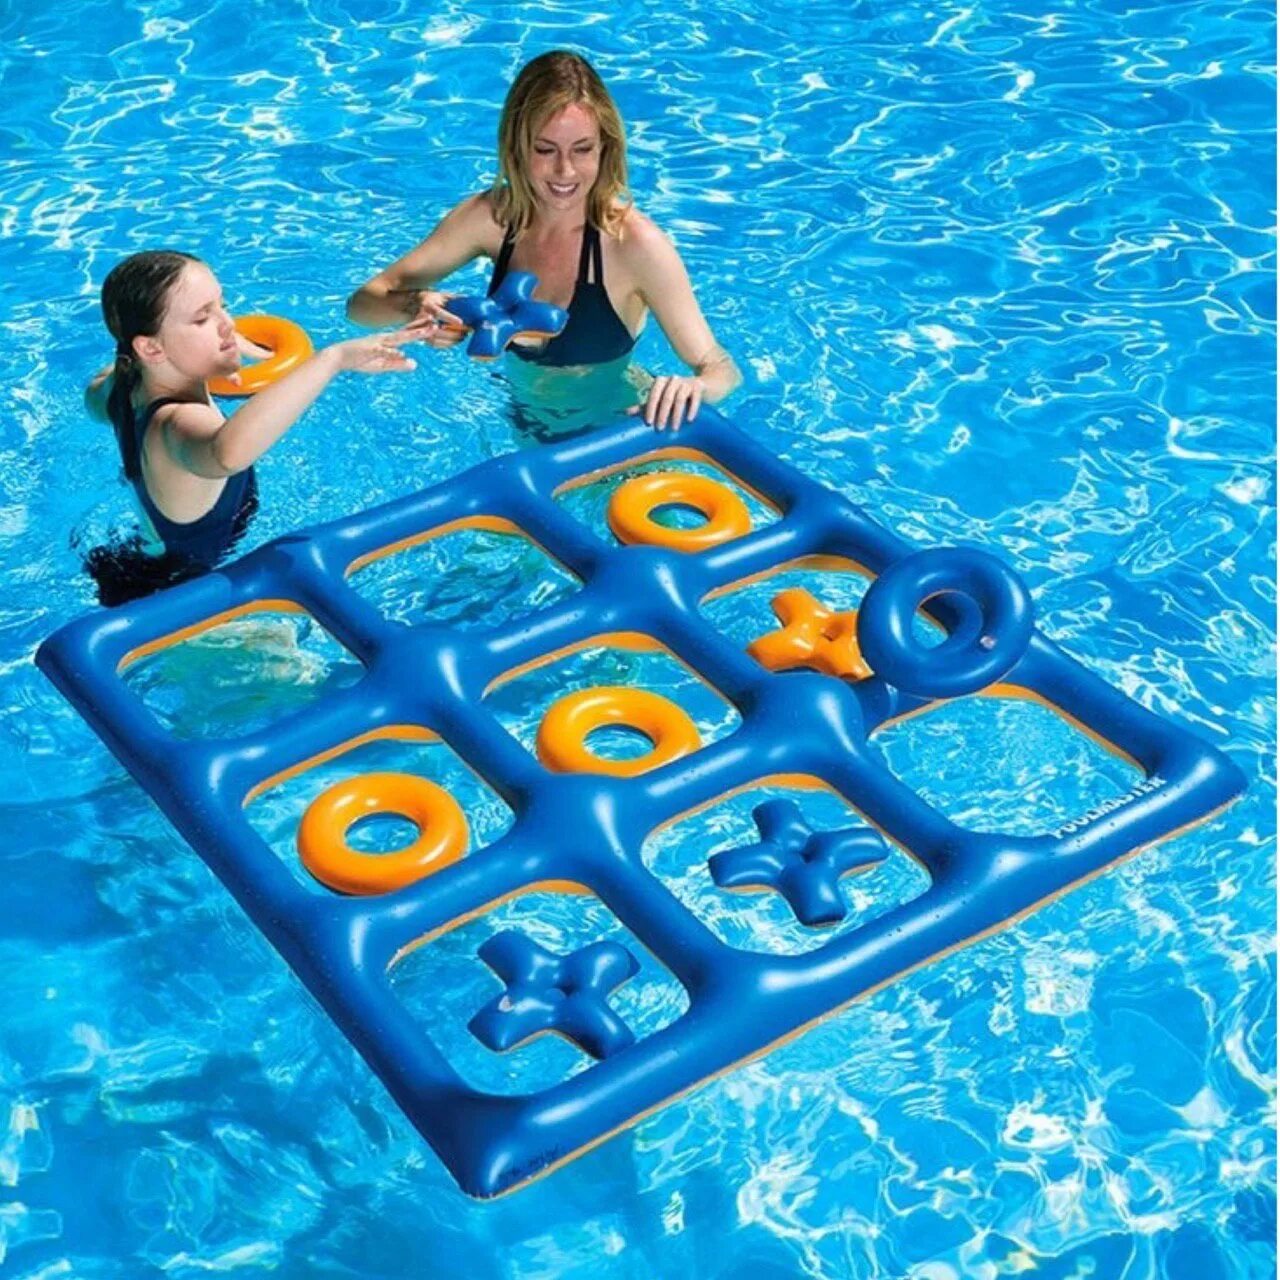 Инвентарь для купания. Игрушки для бассейна. Игры в бассейне для детей. Игрушки плавающие для бассейна. Во что можно поиграть дома девочкам